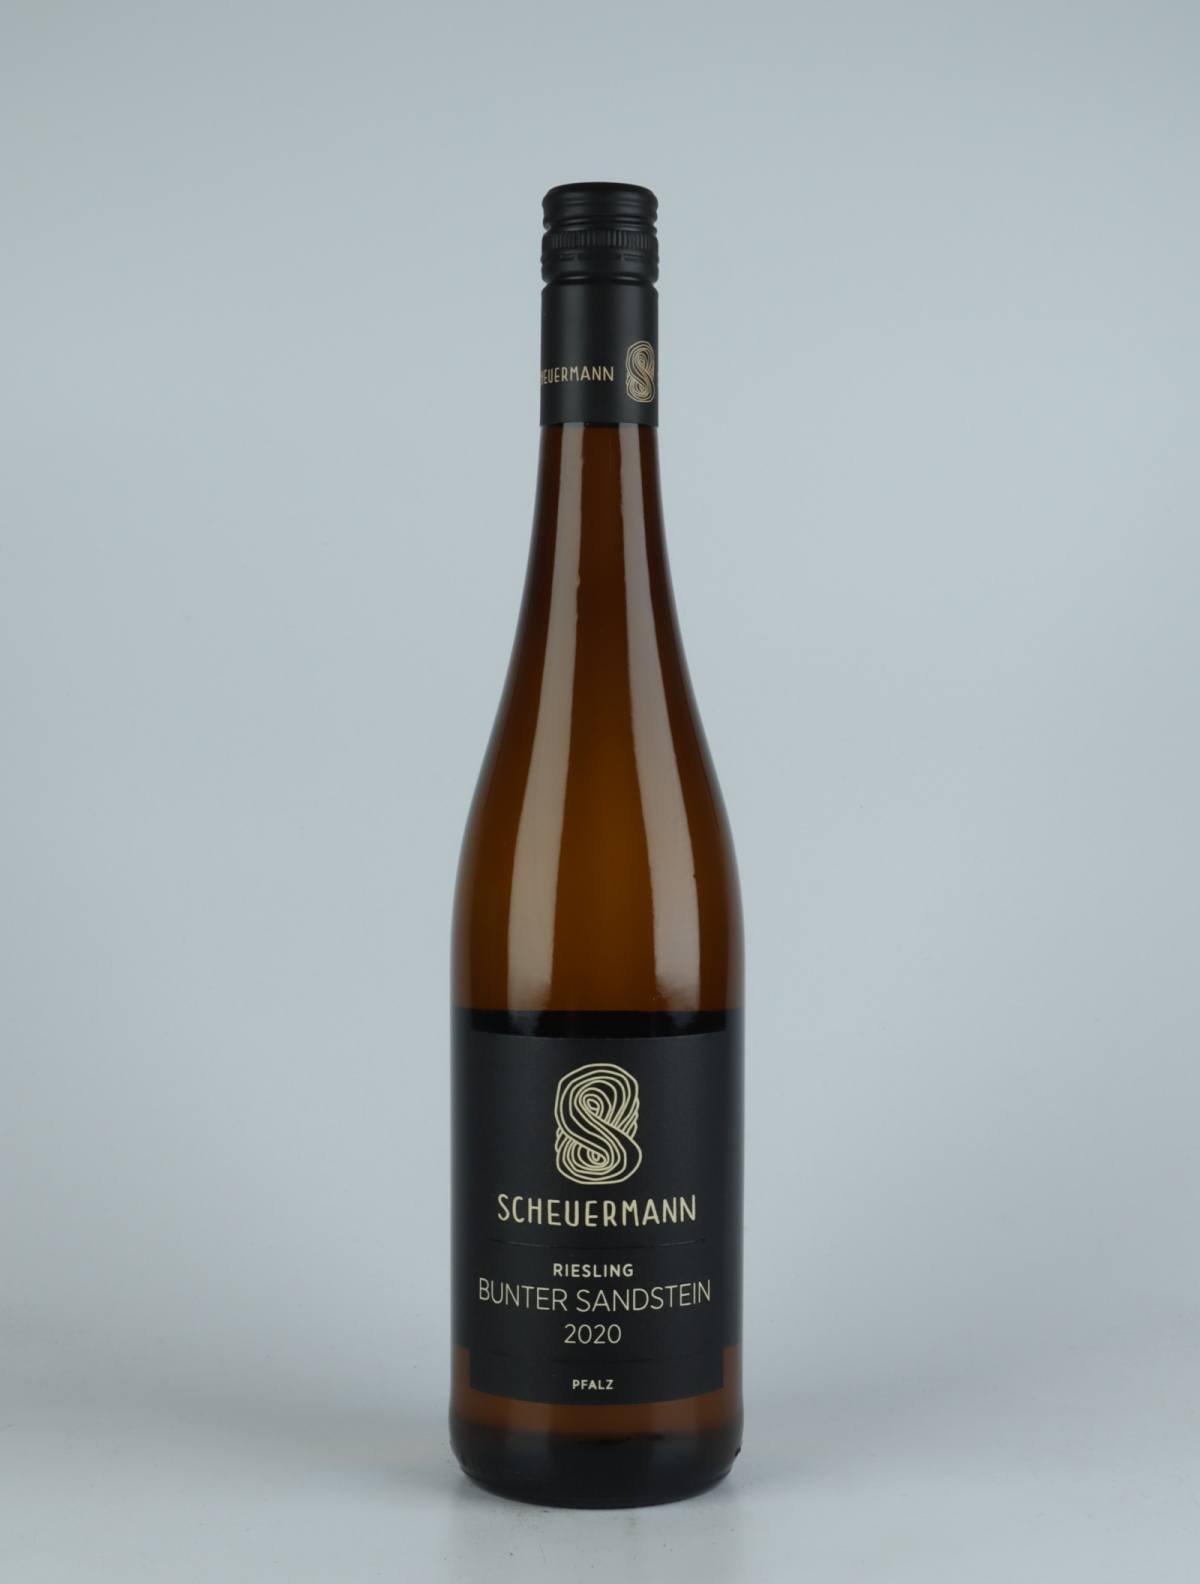 A bottle  Riesling Bunter Sandstein White wine from Weingut Scheuermann, Pfalz in Germany